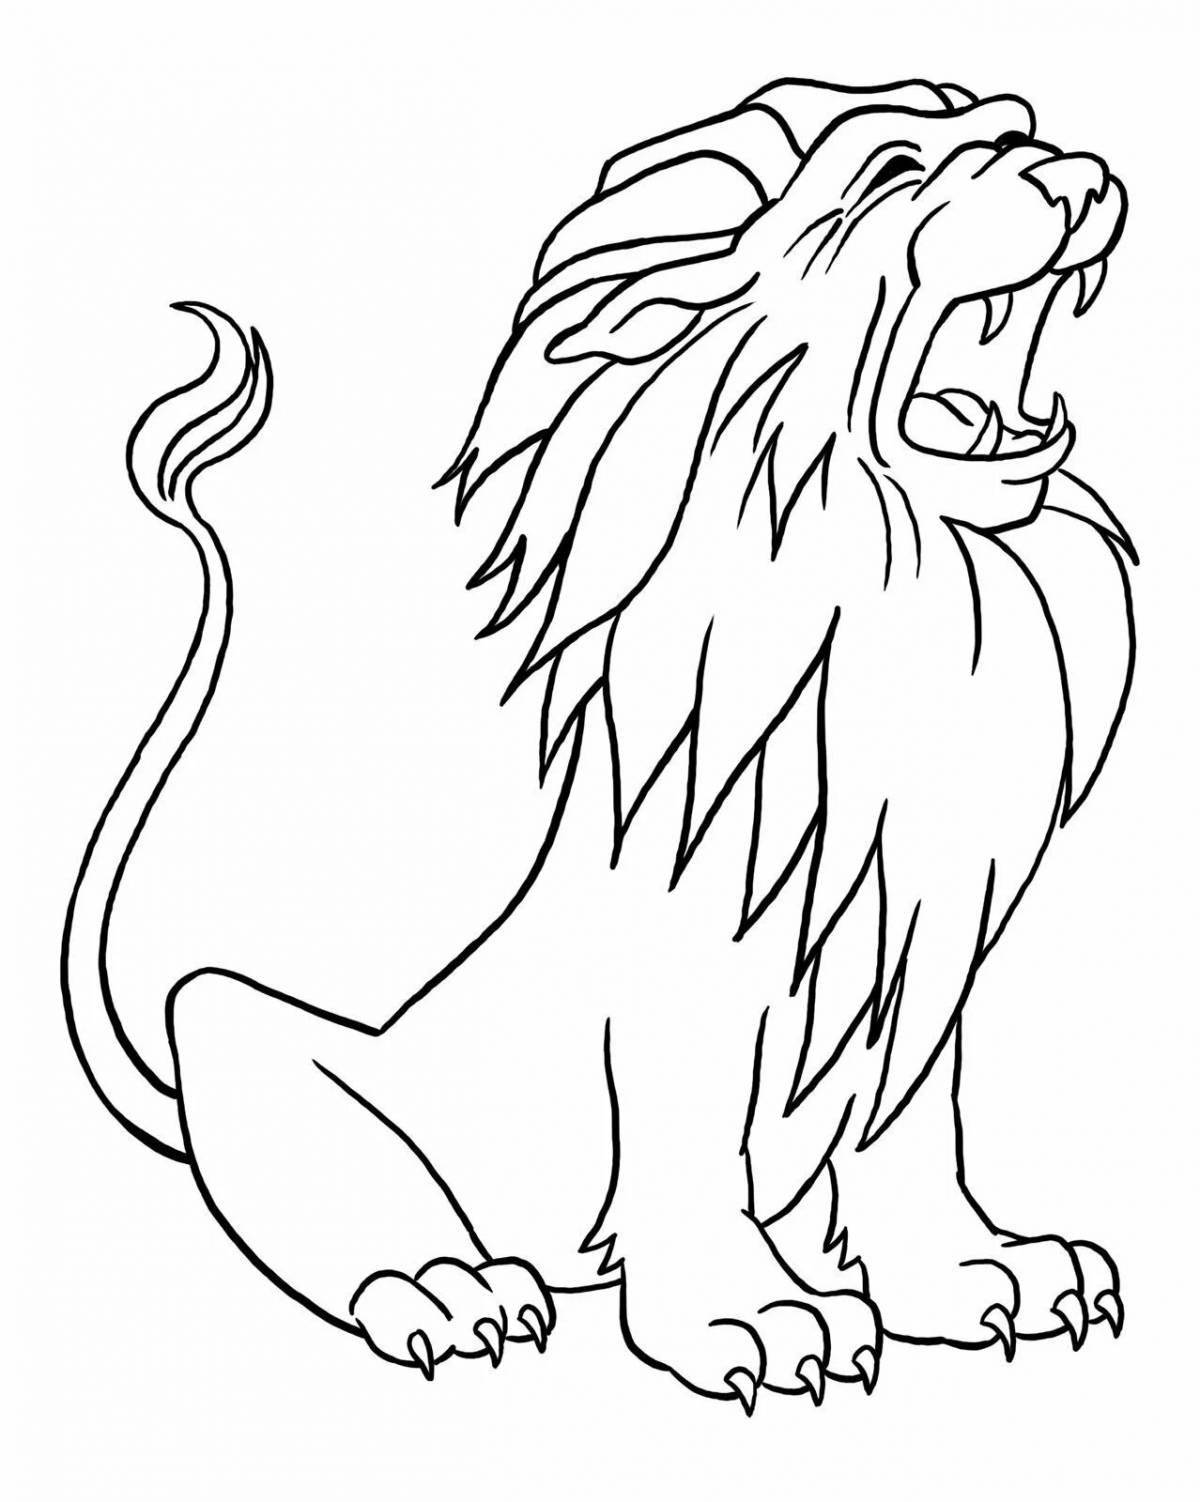 Увлекательный рисунок льва для детей